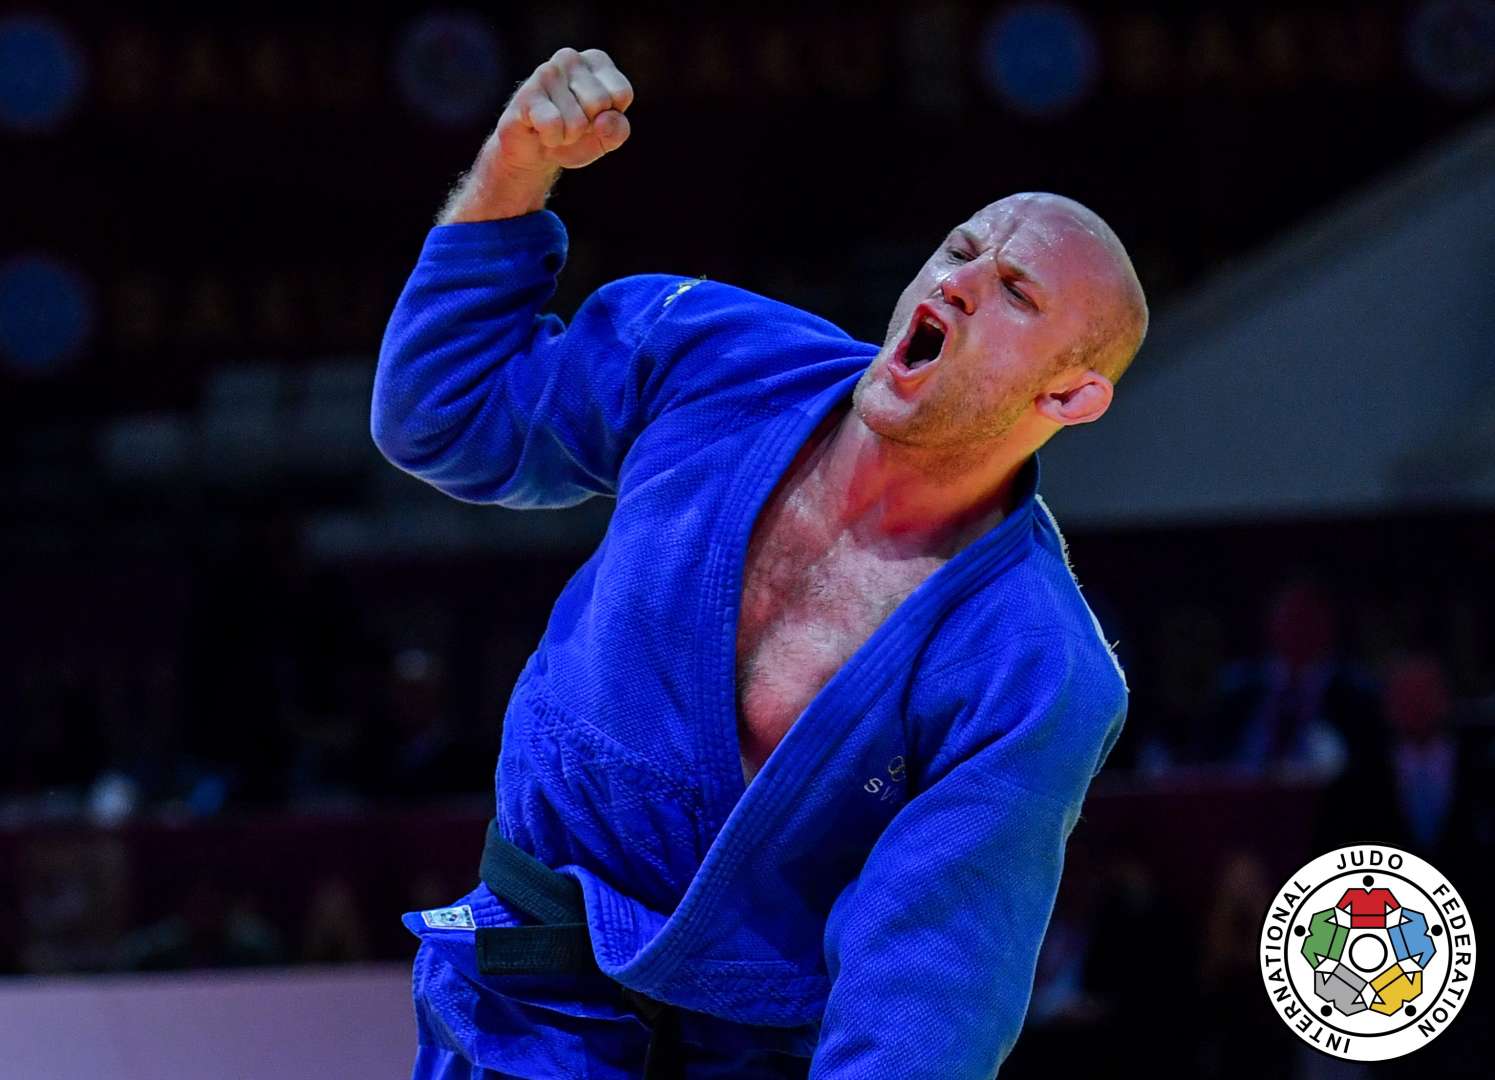 Marcus Nyman i blå judodräkt knyter handen i en segergest.